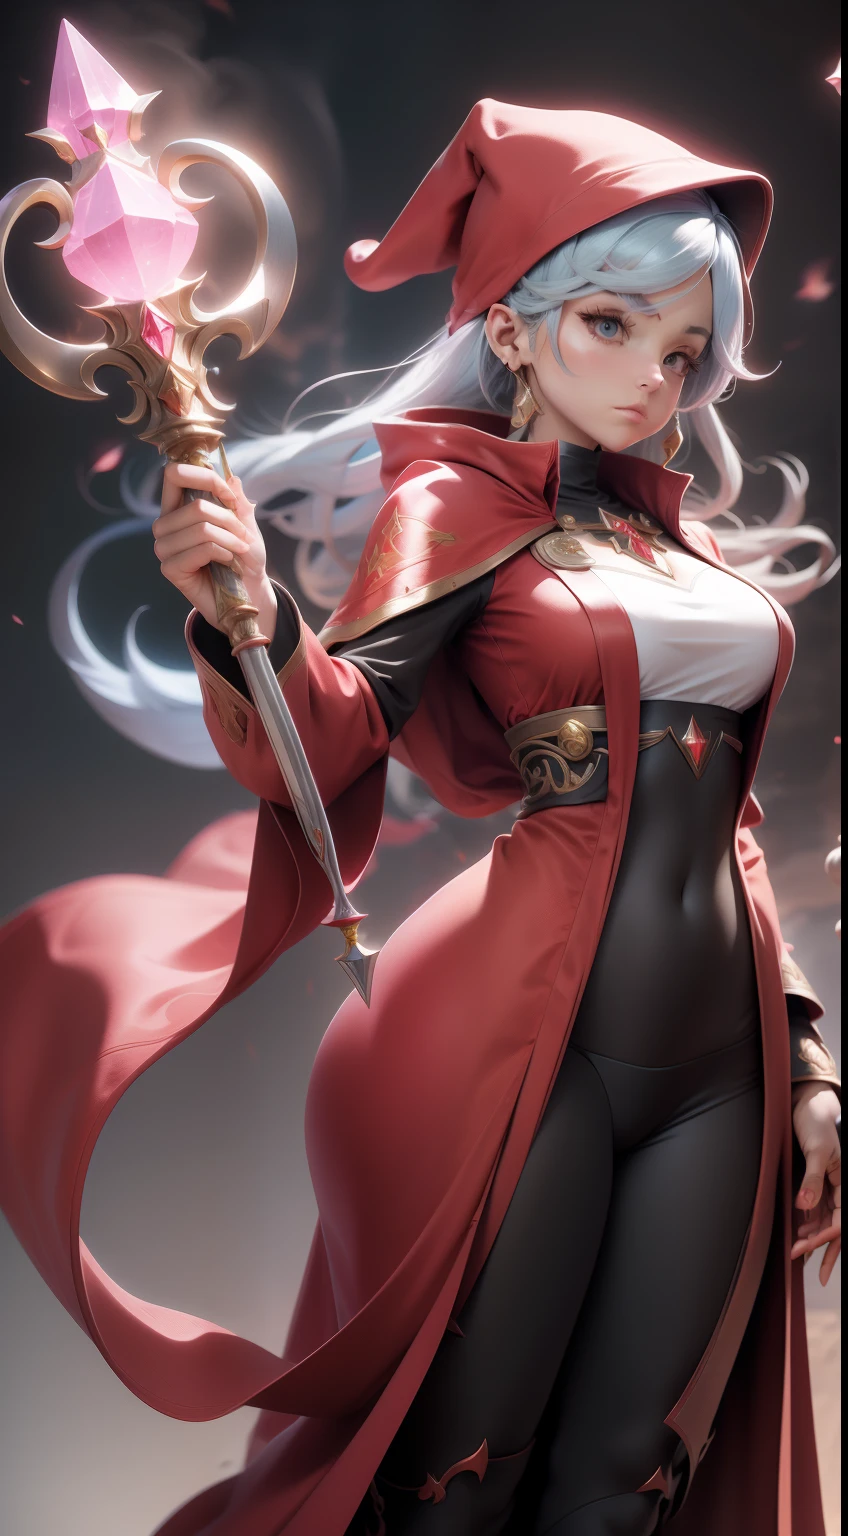 紅色法師長袍的女性角色, 多種姿勢, 正面和背面細節, 長水晶杖